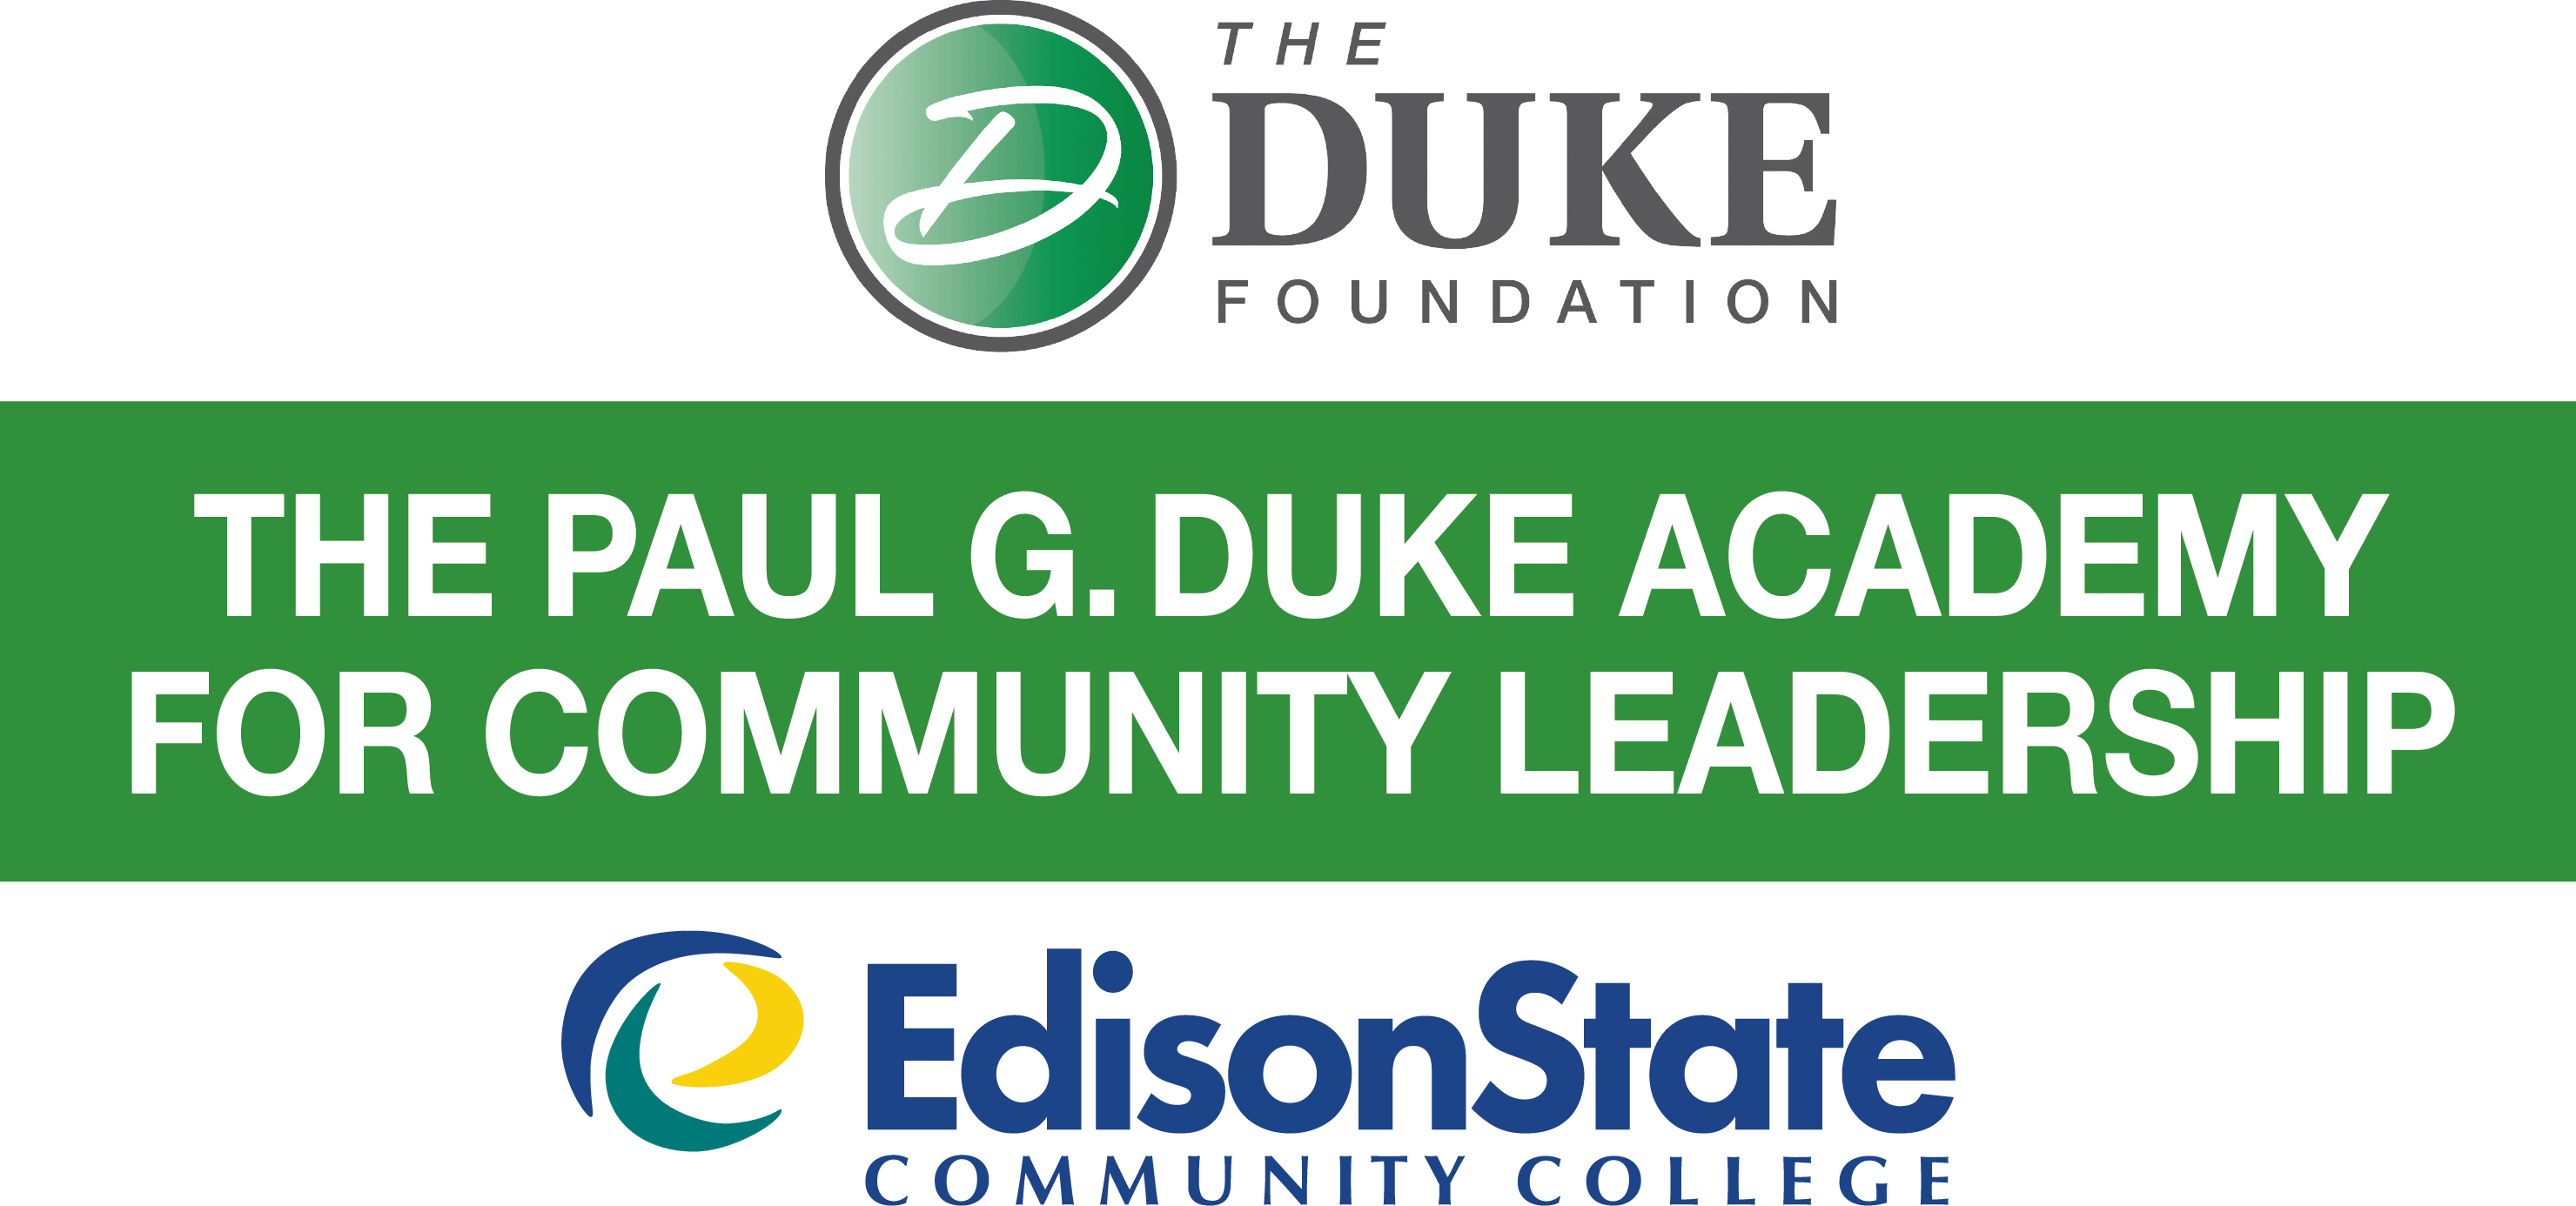 Paul G. Duke Academy for Community Leadership